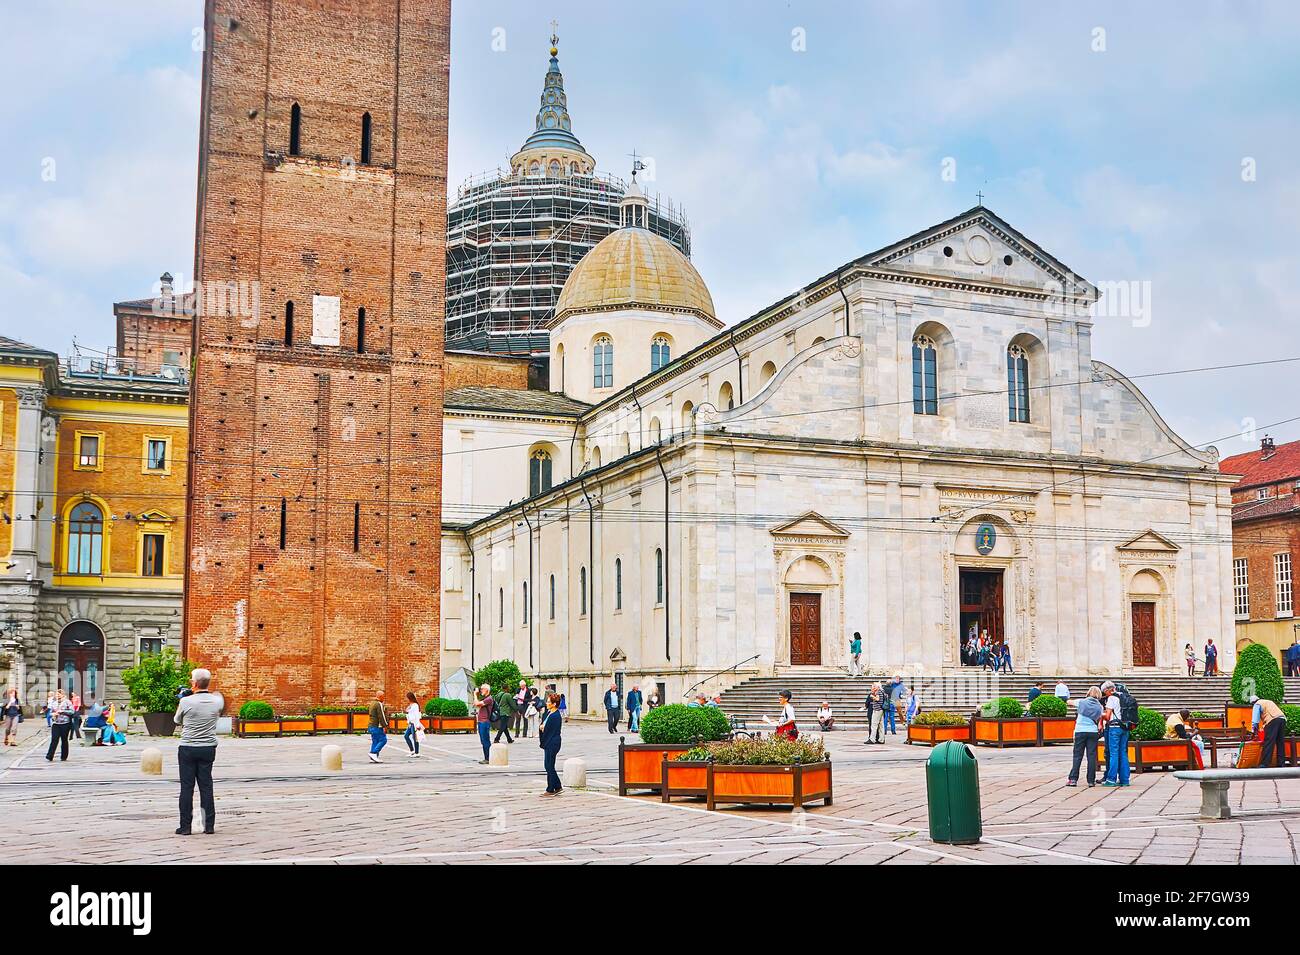 TORINO, ITALIA - 9 maggio 2012: Il Duomo medievale di San Giovanni Battista (Duomo di Torino) con il campanile in mattoni (Campanile) e la facciata in marmo bianco, l Foto Stock